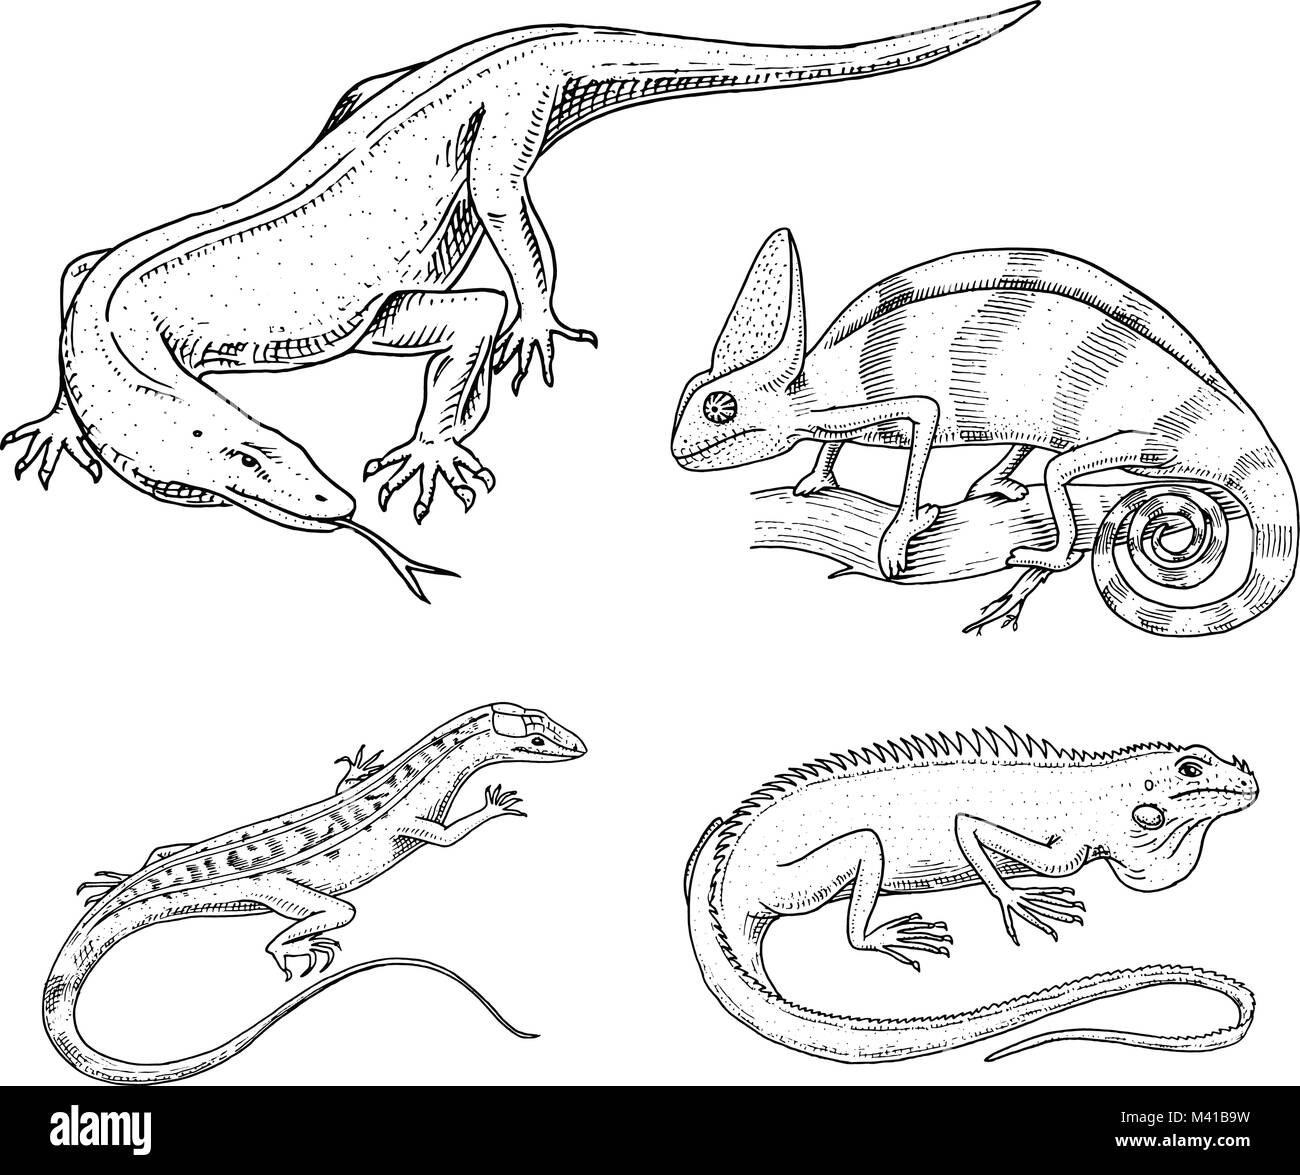 Chameleon lucertola verde americano iguana, rettili o serpenti o drago di Komodo monitor. specie di erbivori. illustrazione vettoriale per prenotare o pet store, zoo. incisi disegnati a mano nel vecchio sketch. Illustrazione Vettoriale